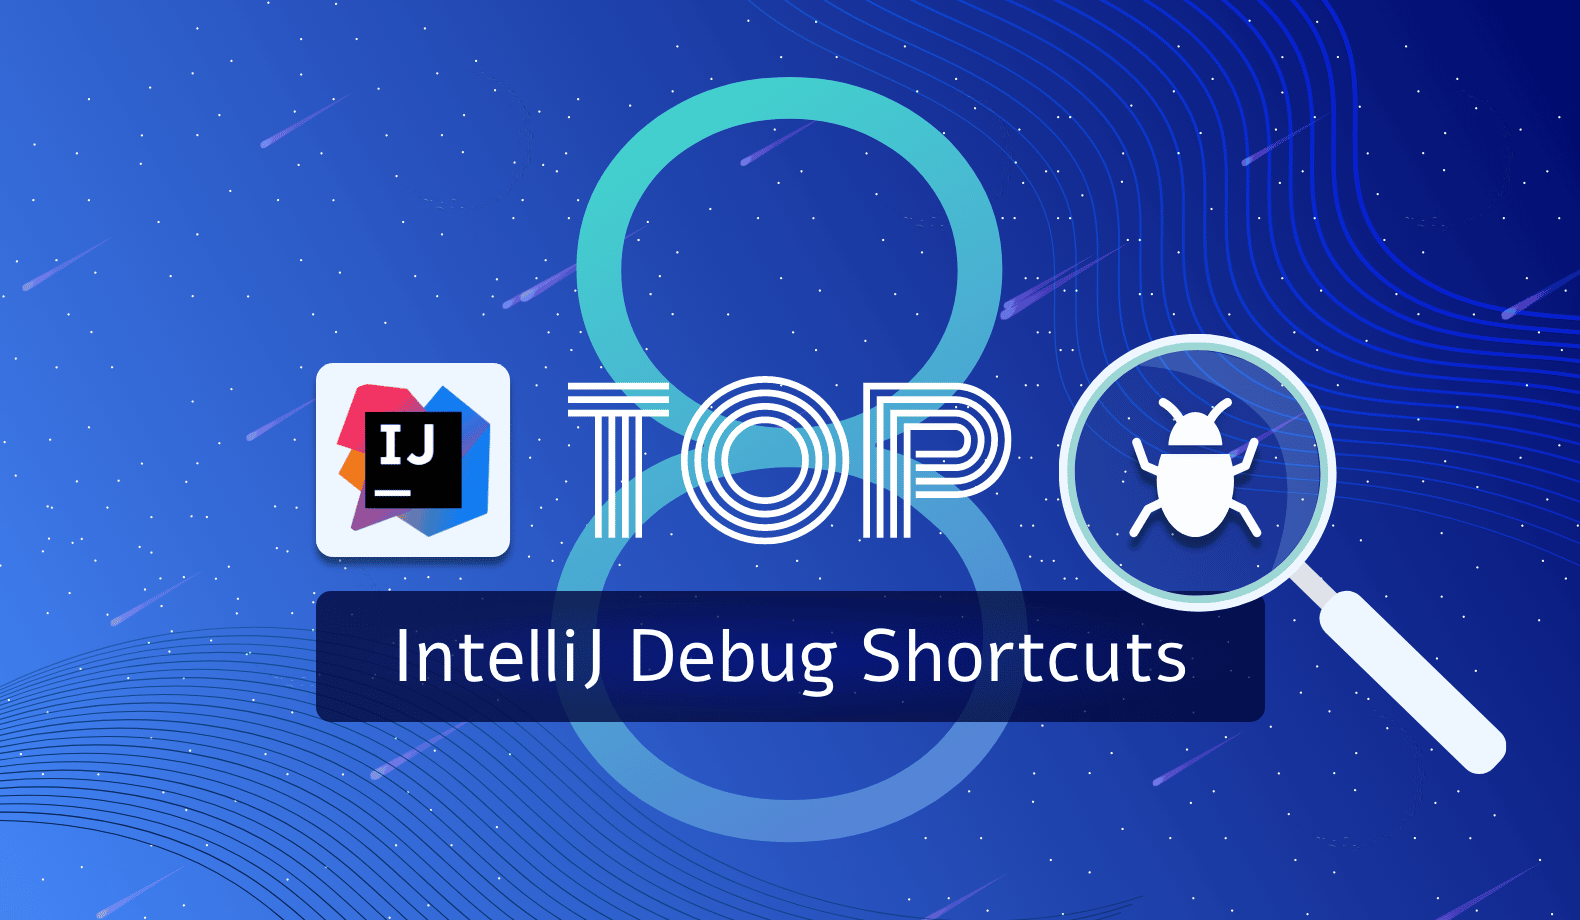 Top IntelliJ debug shortcuts